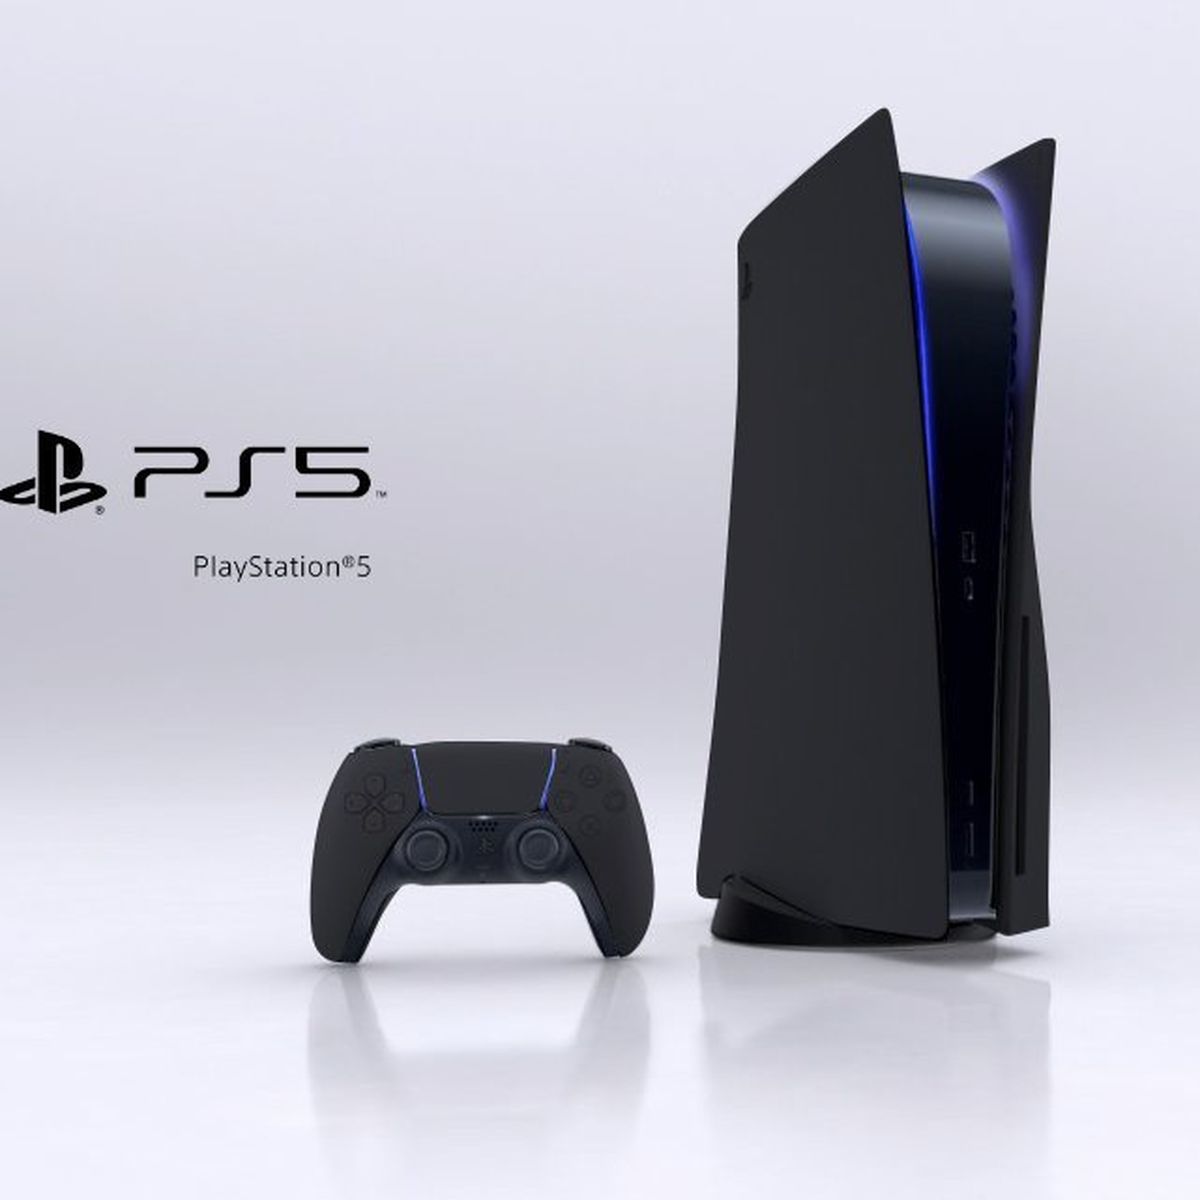 Playstation anuncia el diseño de las cajas para los juego